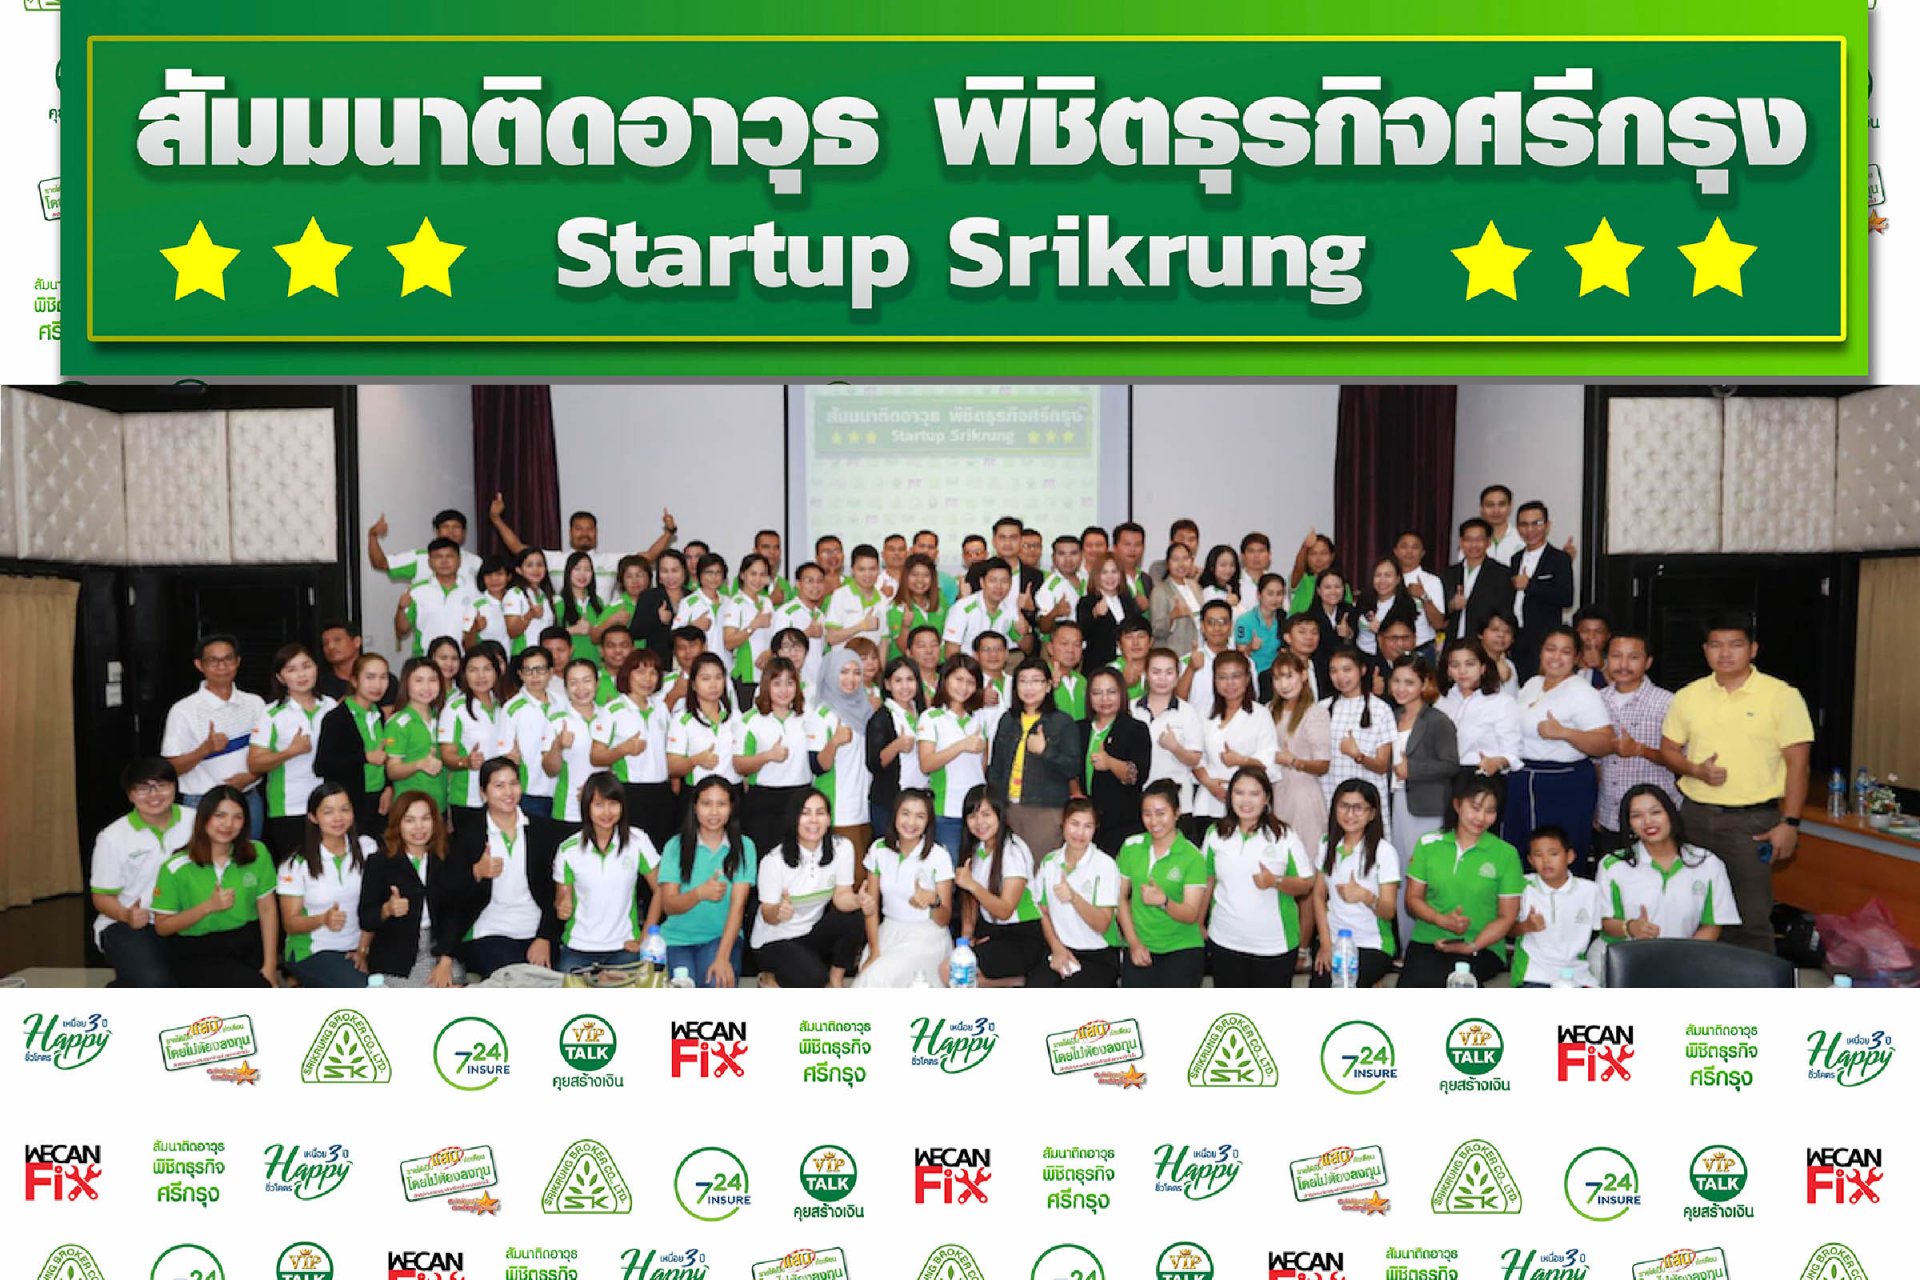 สัมมนาติดอาวุธพิชิตธุรกิจศรีกรุง ครั้งที่ 2 "Startup Srikrung"